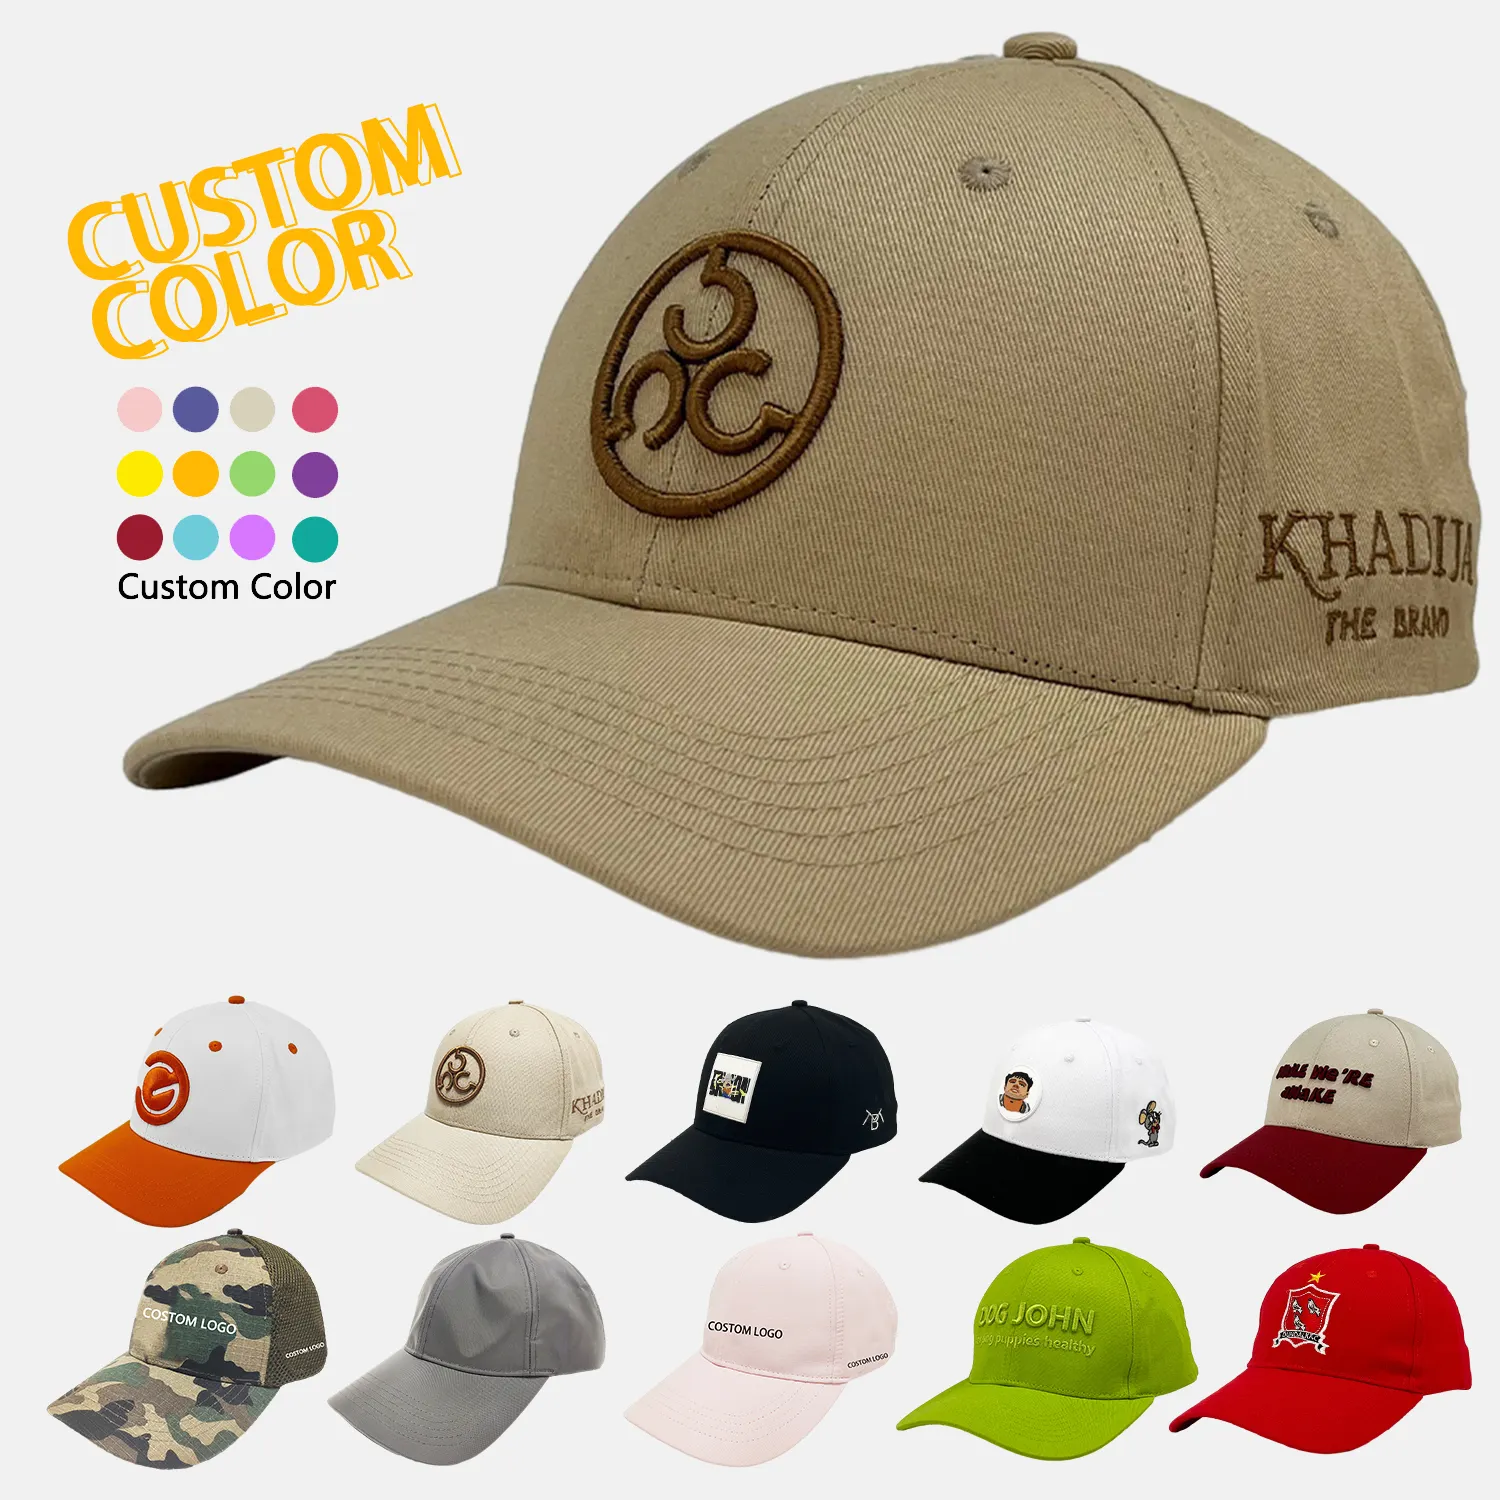 All'ingrosso personalizza i berretti con il proprio logo in cotone baseball moda berretto ricamato rialzato berretto moda logo personalizzato